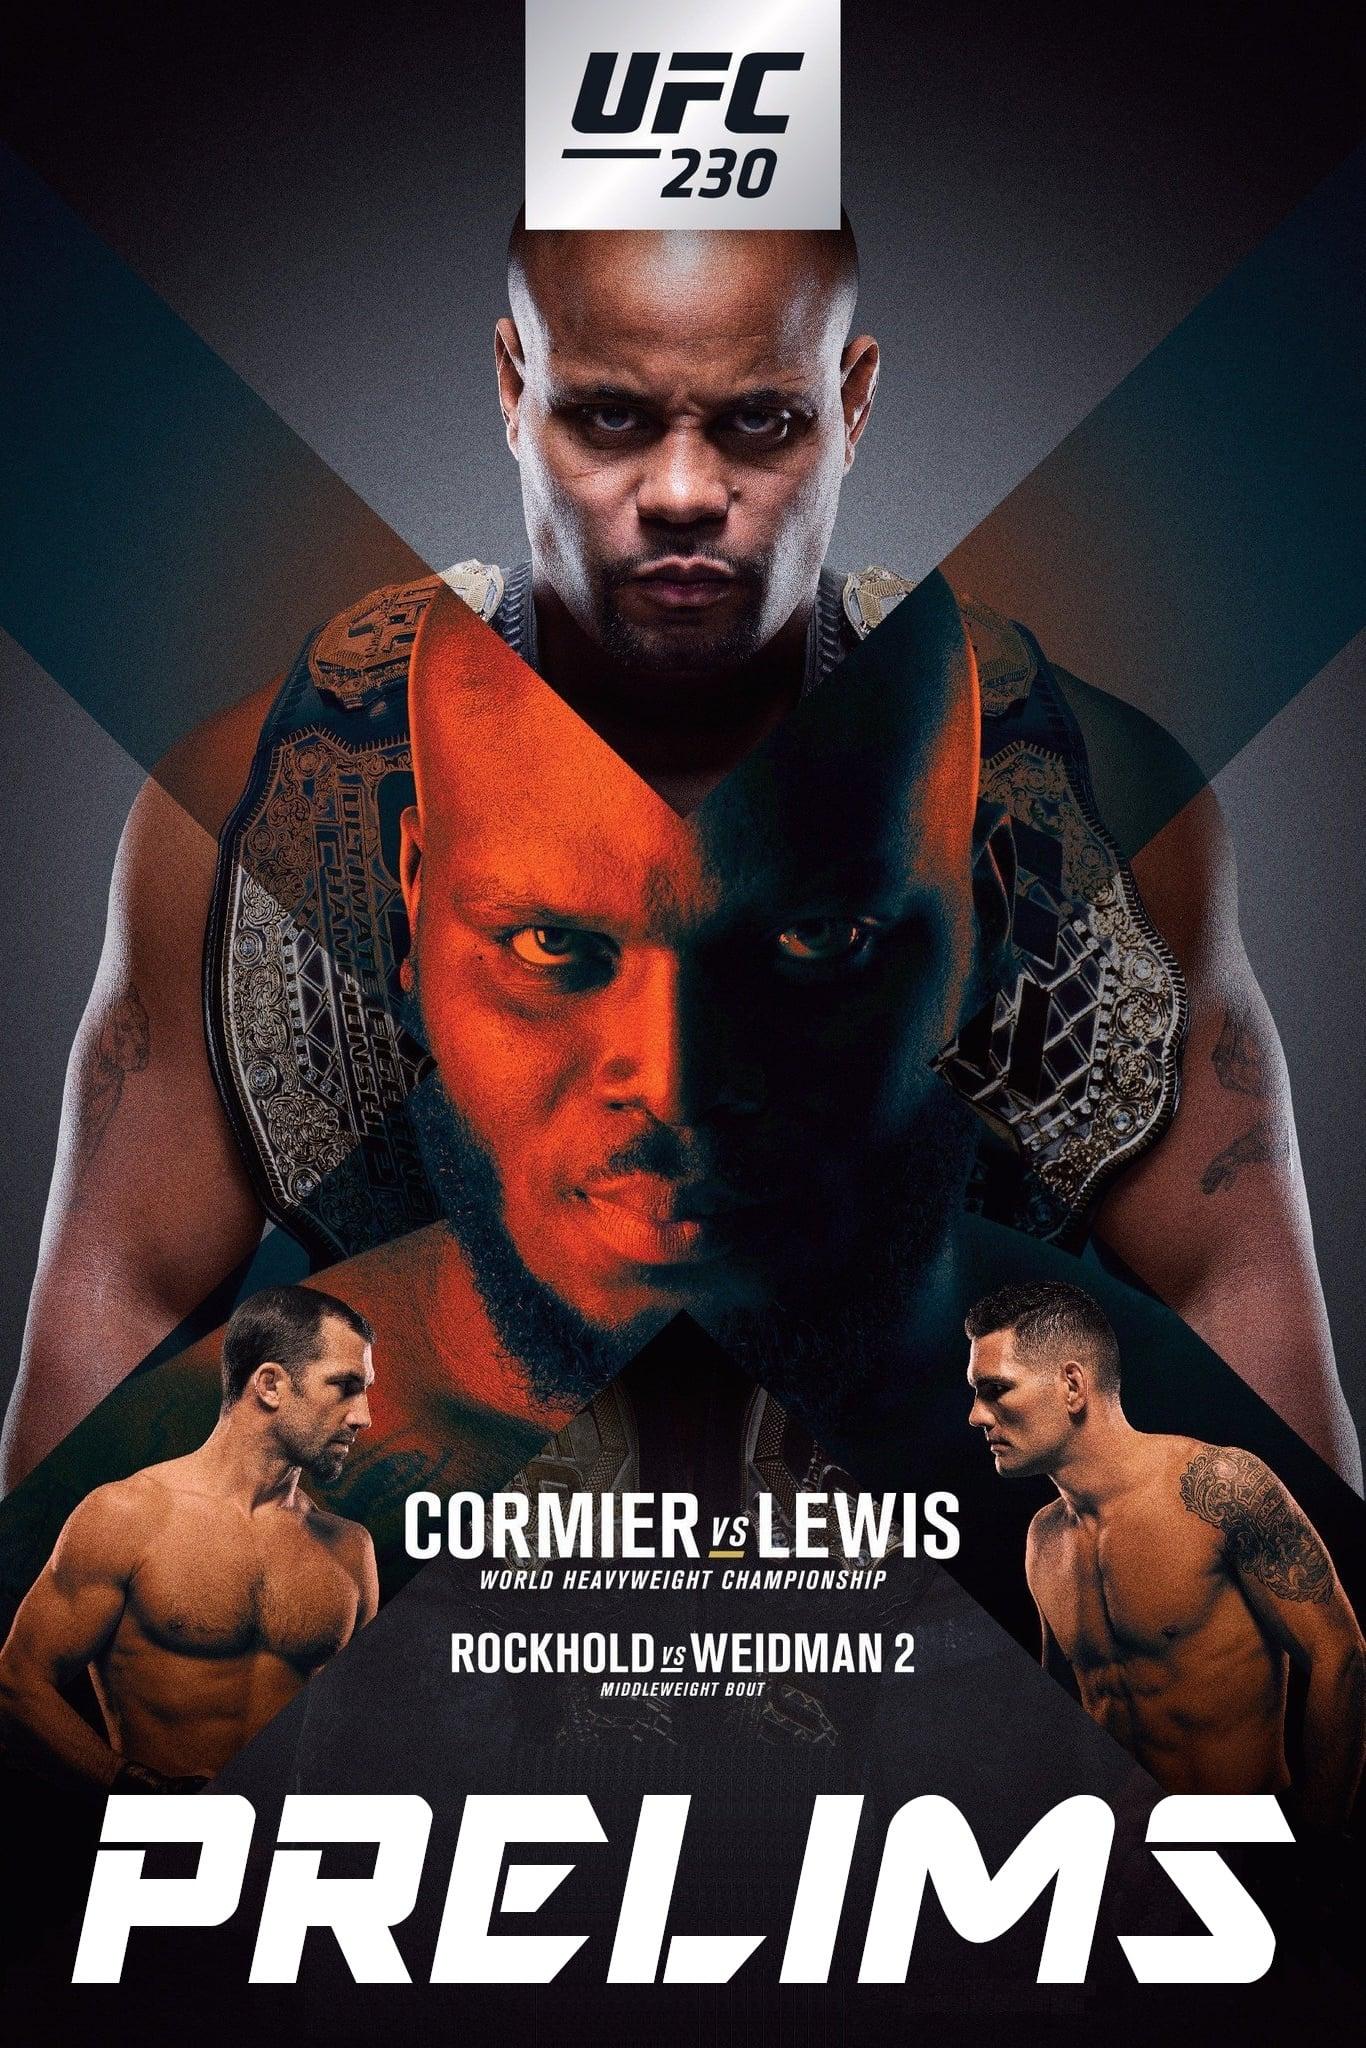 UFC 230: Cormier vs. Lewis poster